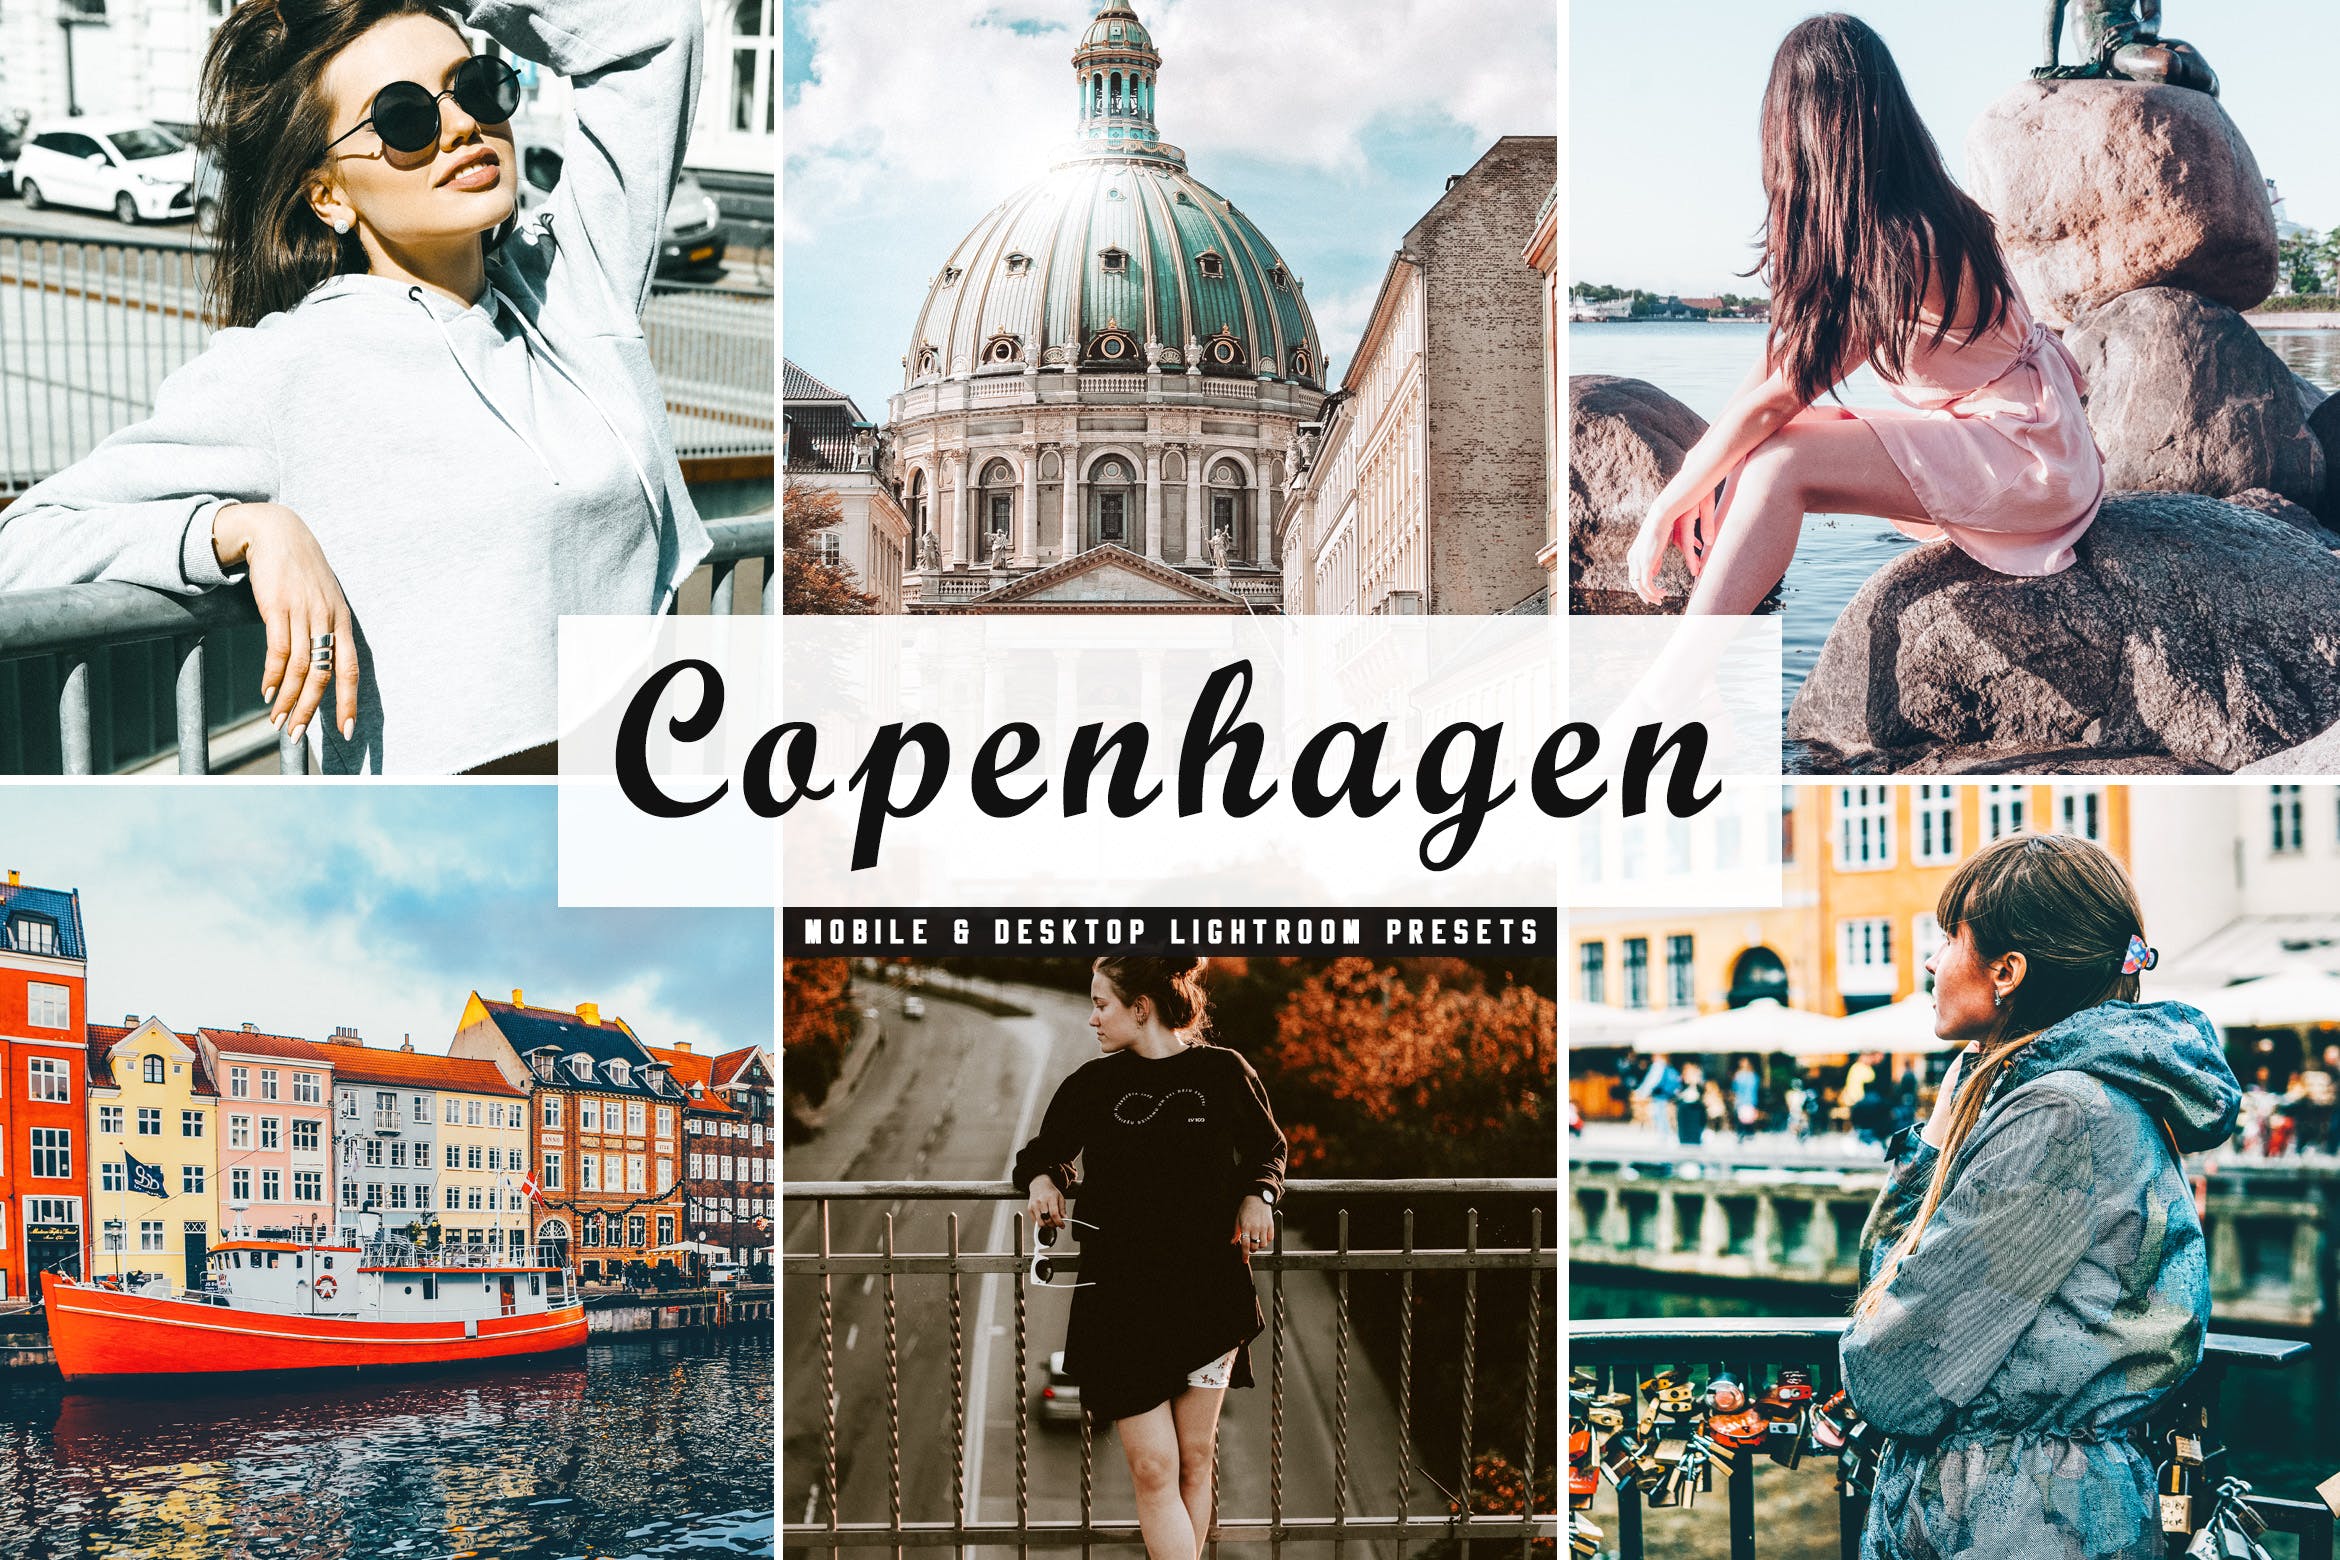 人物风景摄影亮色暖色调处理素材库精选LR预设下载 Copenhagen Mobile & Desktop Lightroom Presets插图